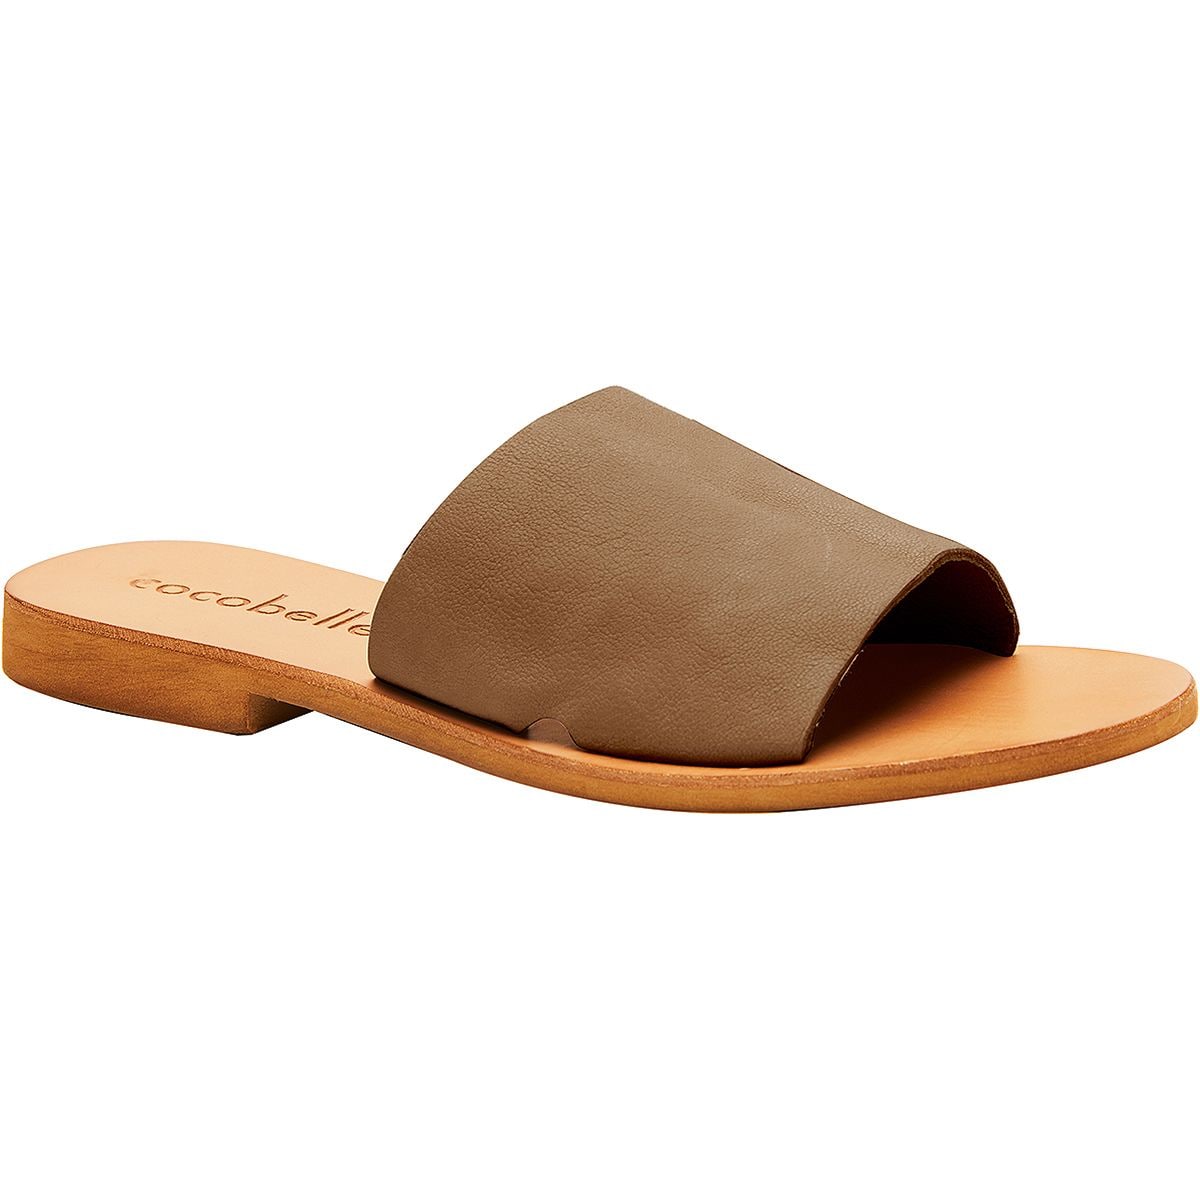 Cocobelle Bhea Slide Sandal - Women's - Footwear